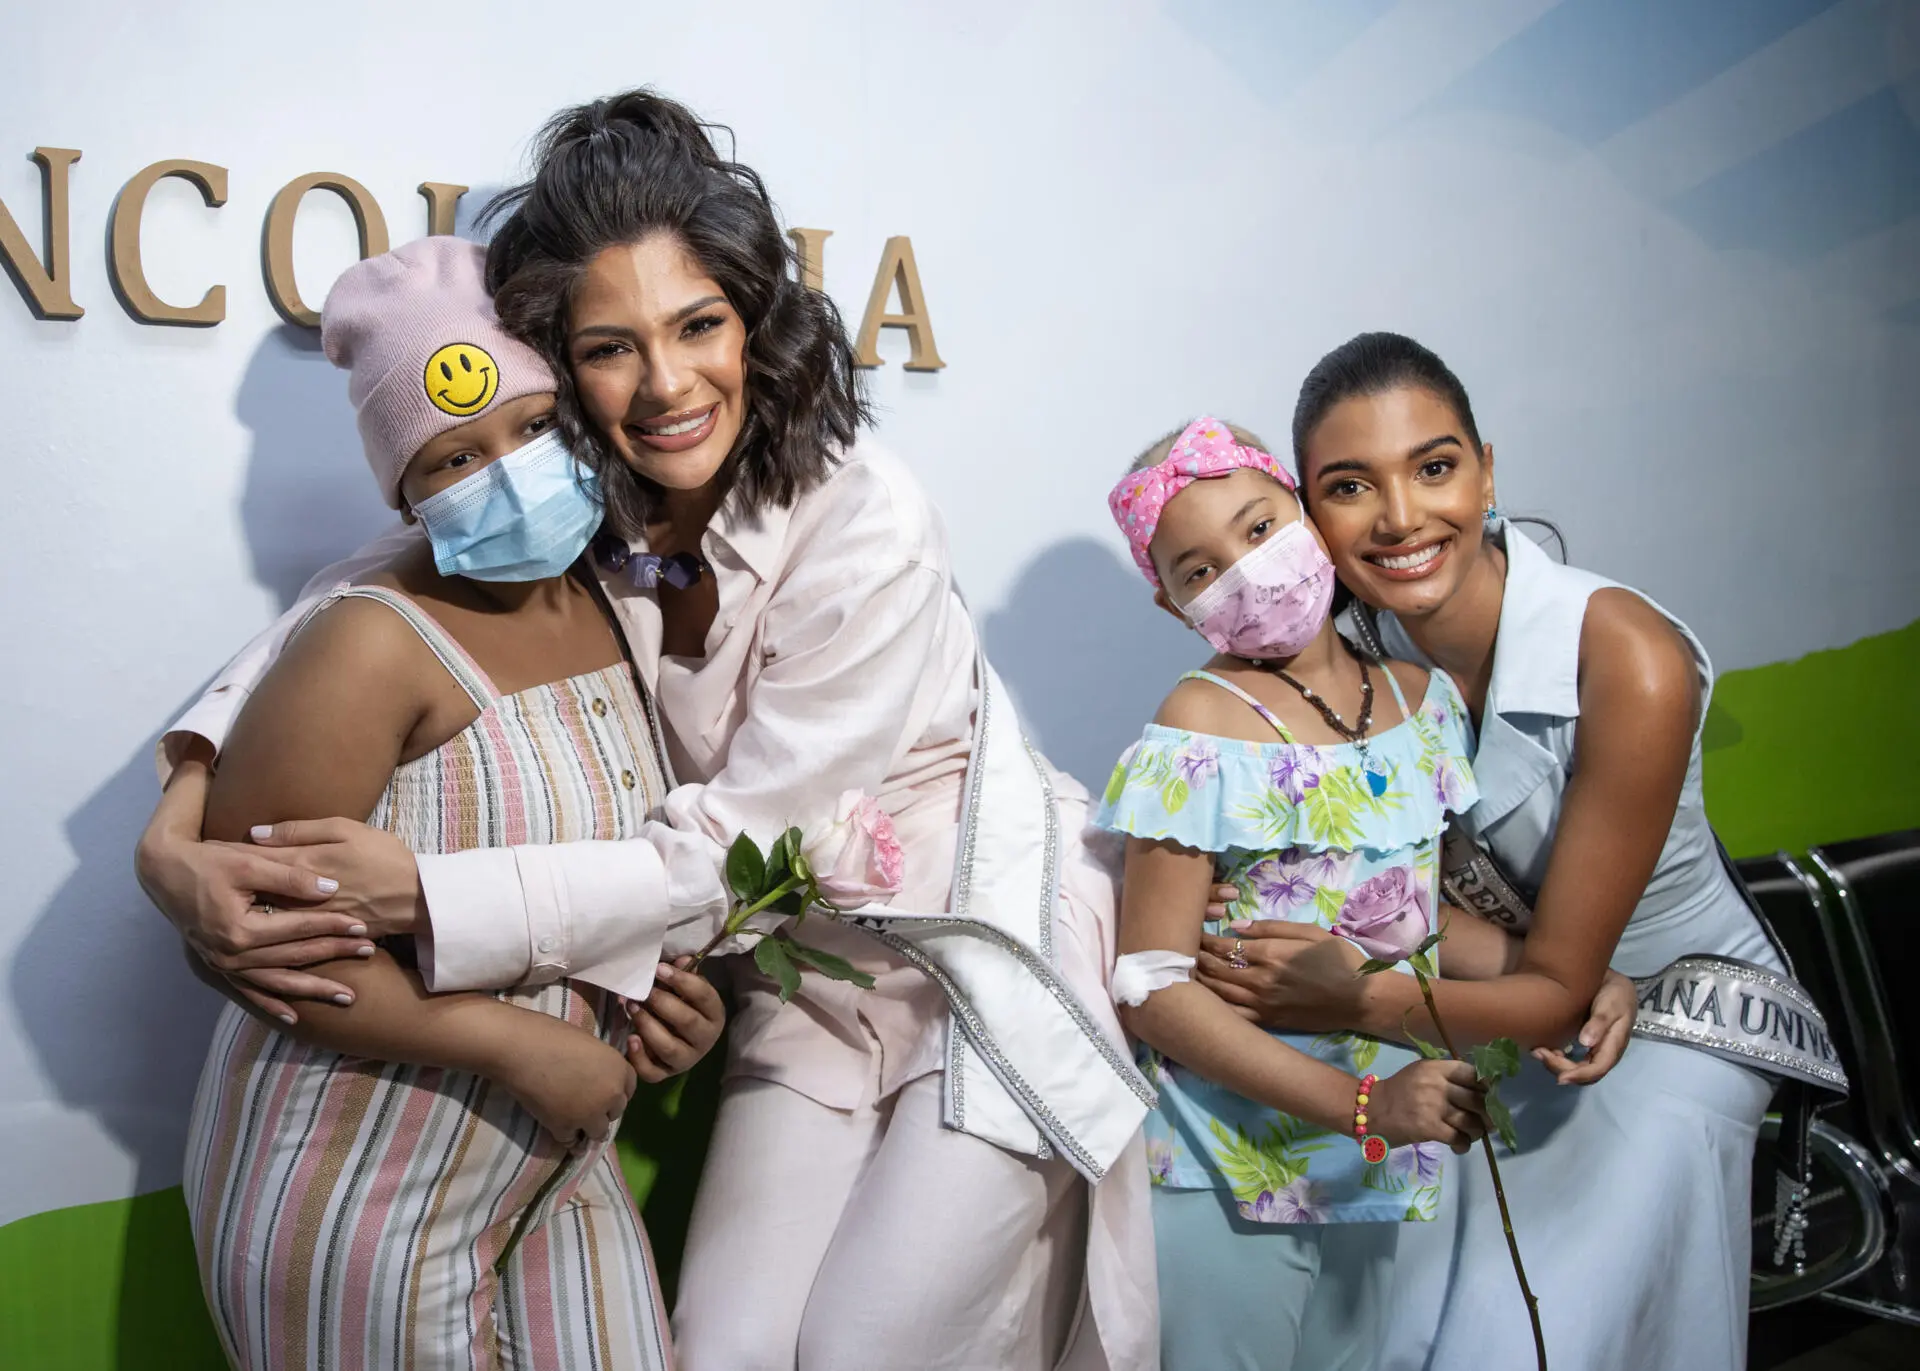 Niños con cáncer en Santo Domingo reciben visita de la Miss Universo nicaragüense Sheynnis Palacios